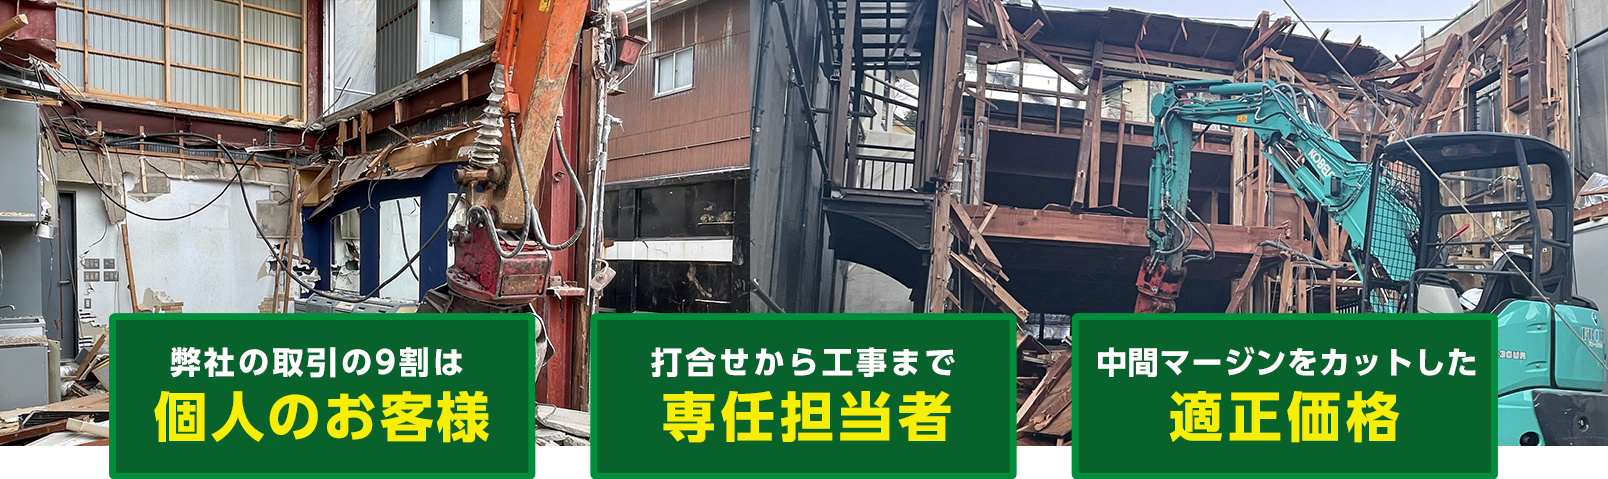 神戸市の解体工事なら堀川セメント工業所へ